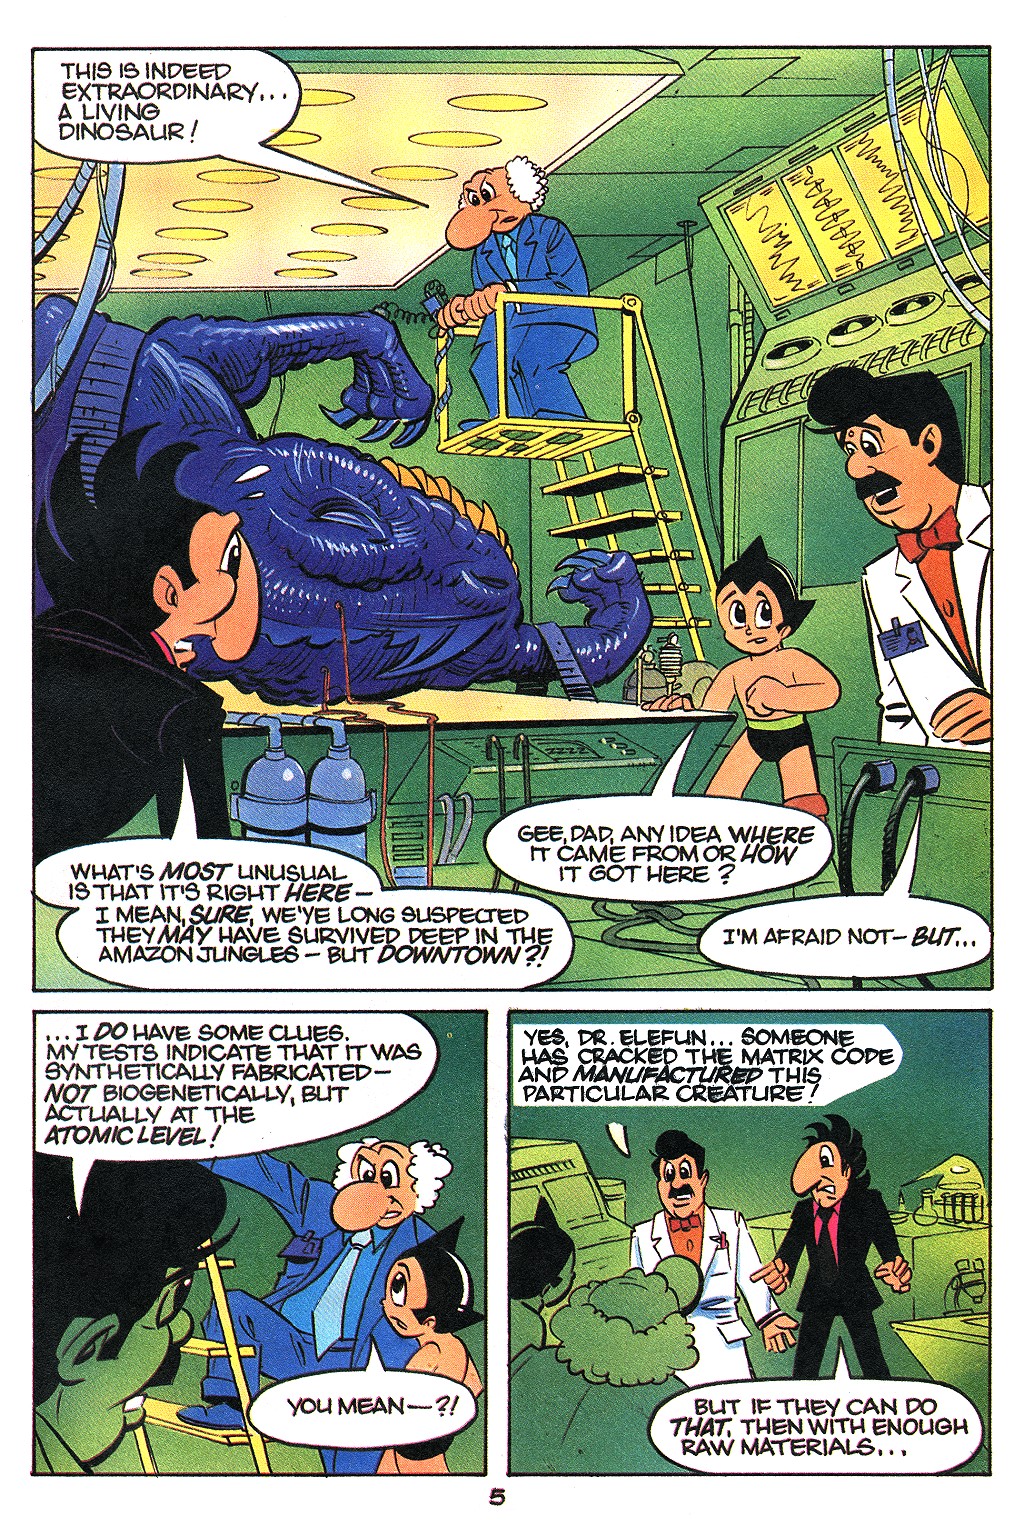 Astro Boy Porn Adult - The Original Astro Boy 14 | Read The Original Astro Boy 14 comic online in  high quality. Read Full Comic online for free - Read comics online in high  quality .